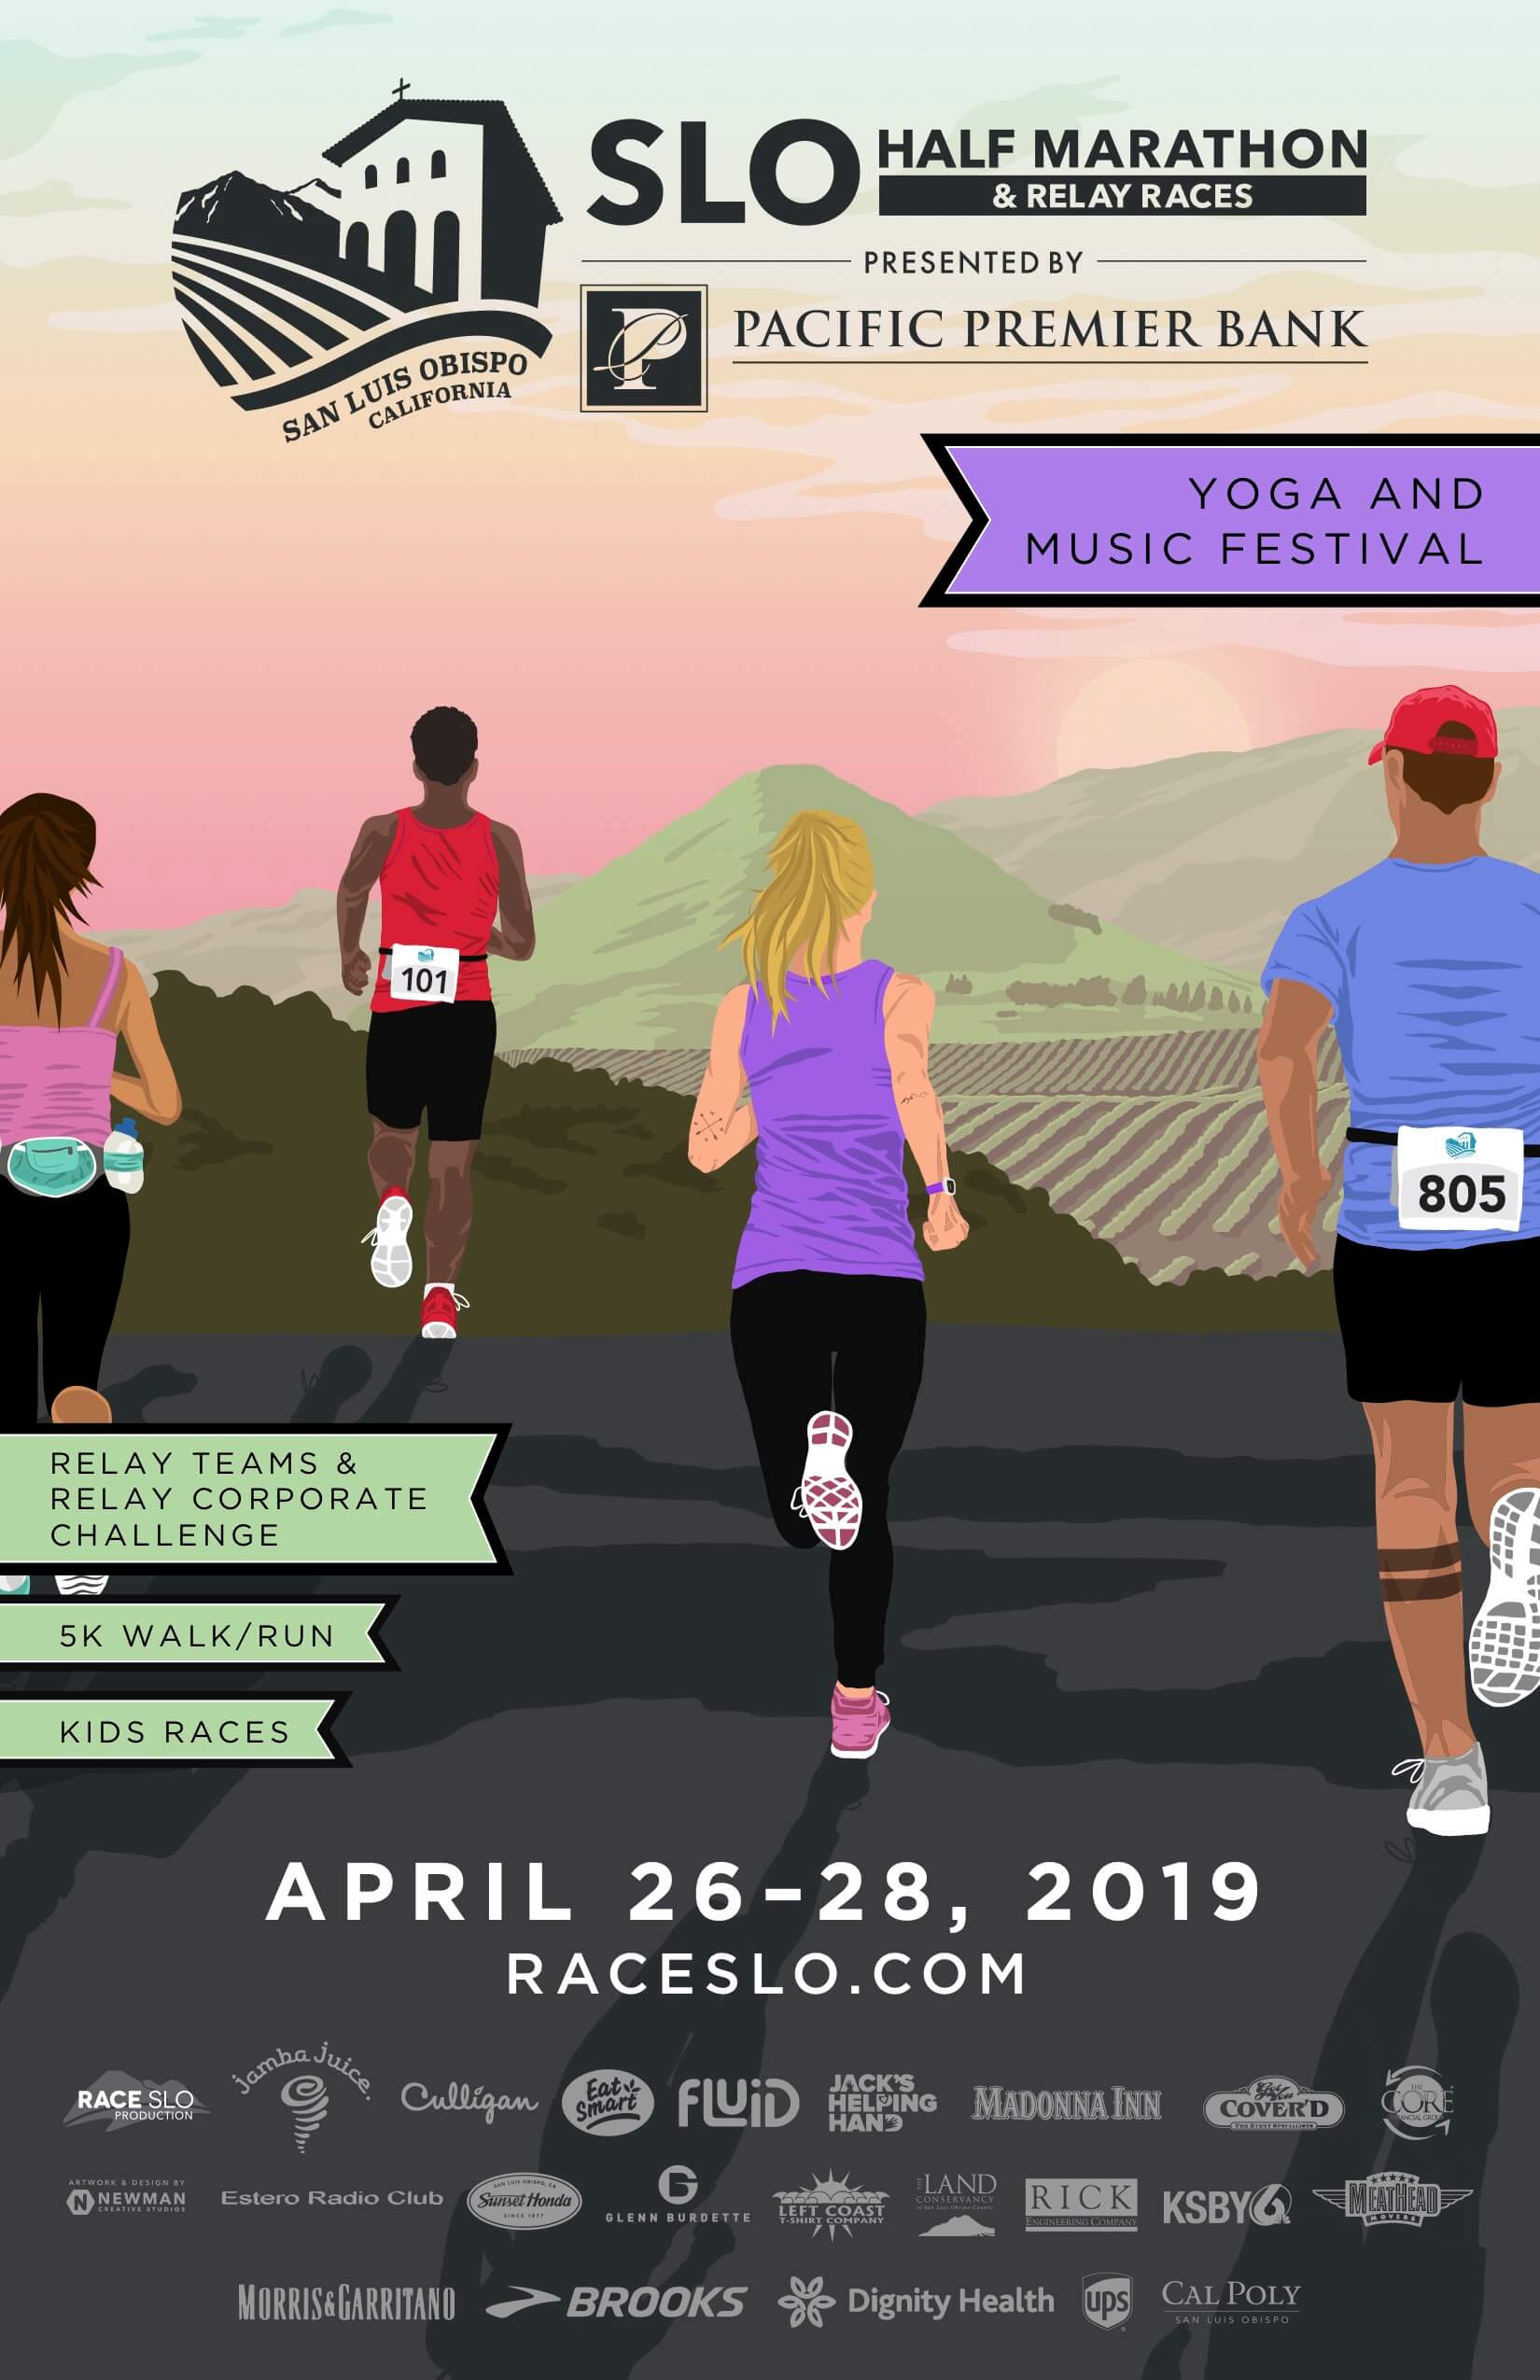 SLO Half Marathon and Relay Races April 2628, 2019 Visit SLO